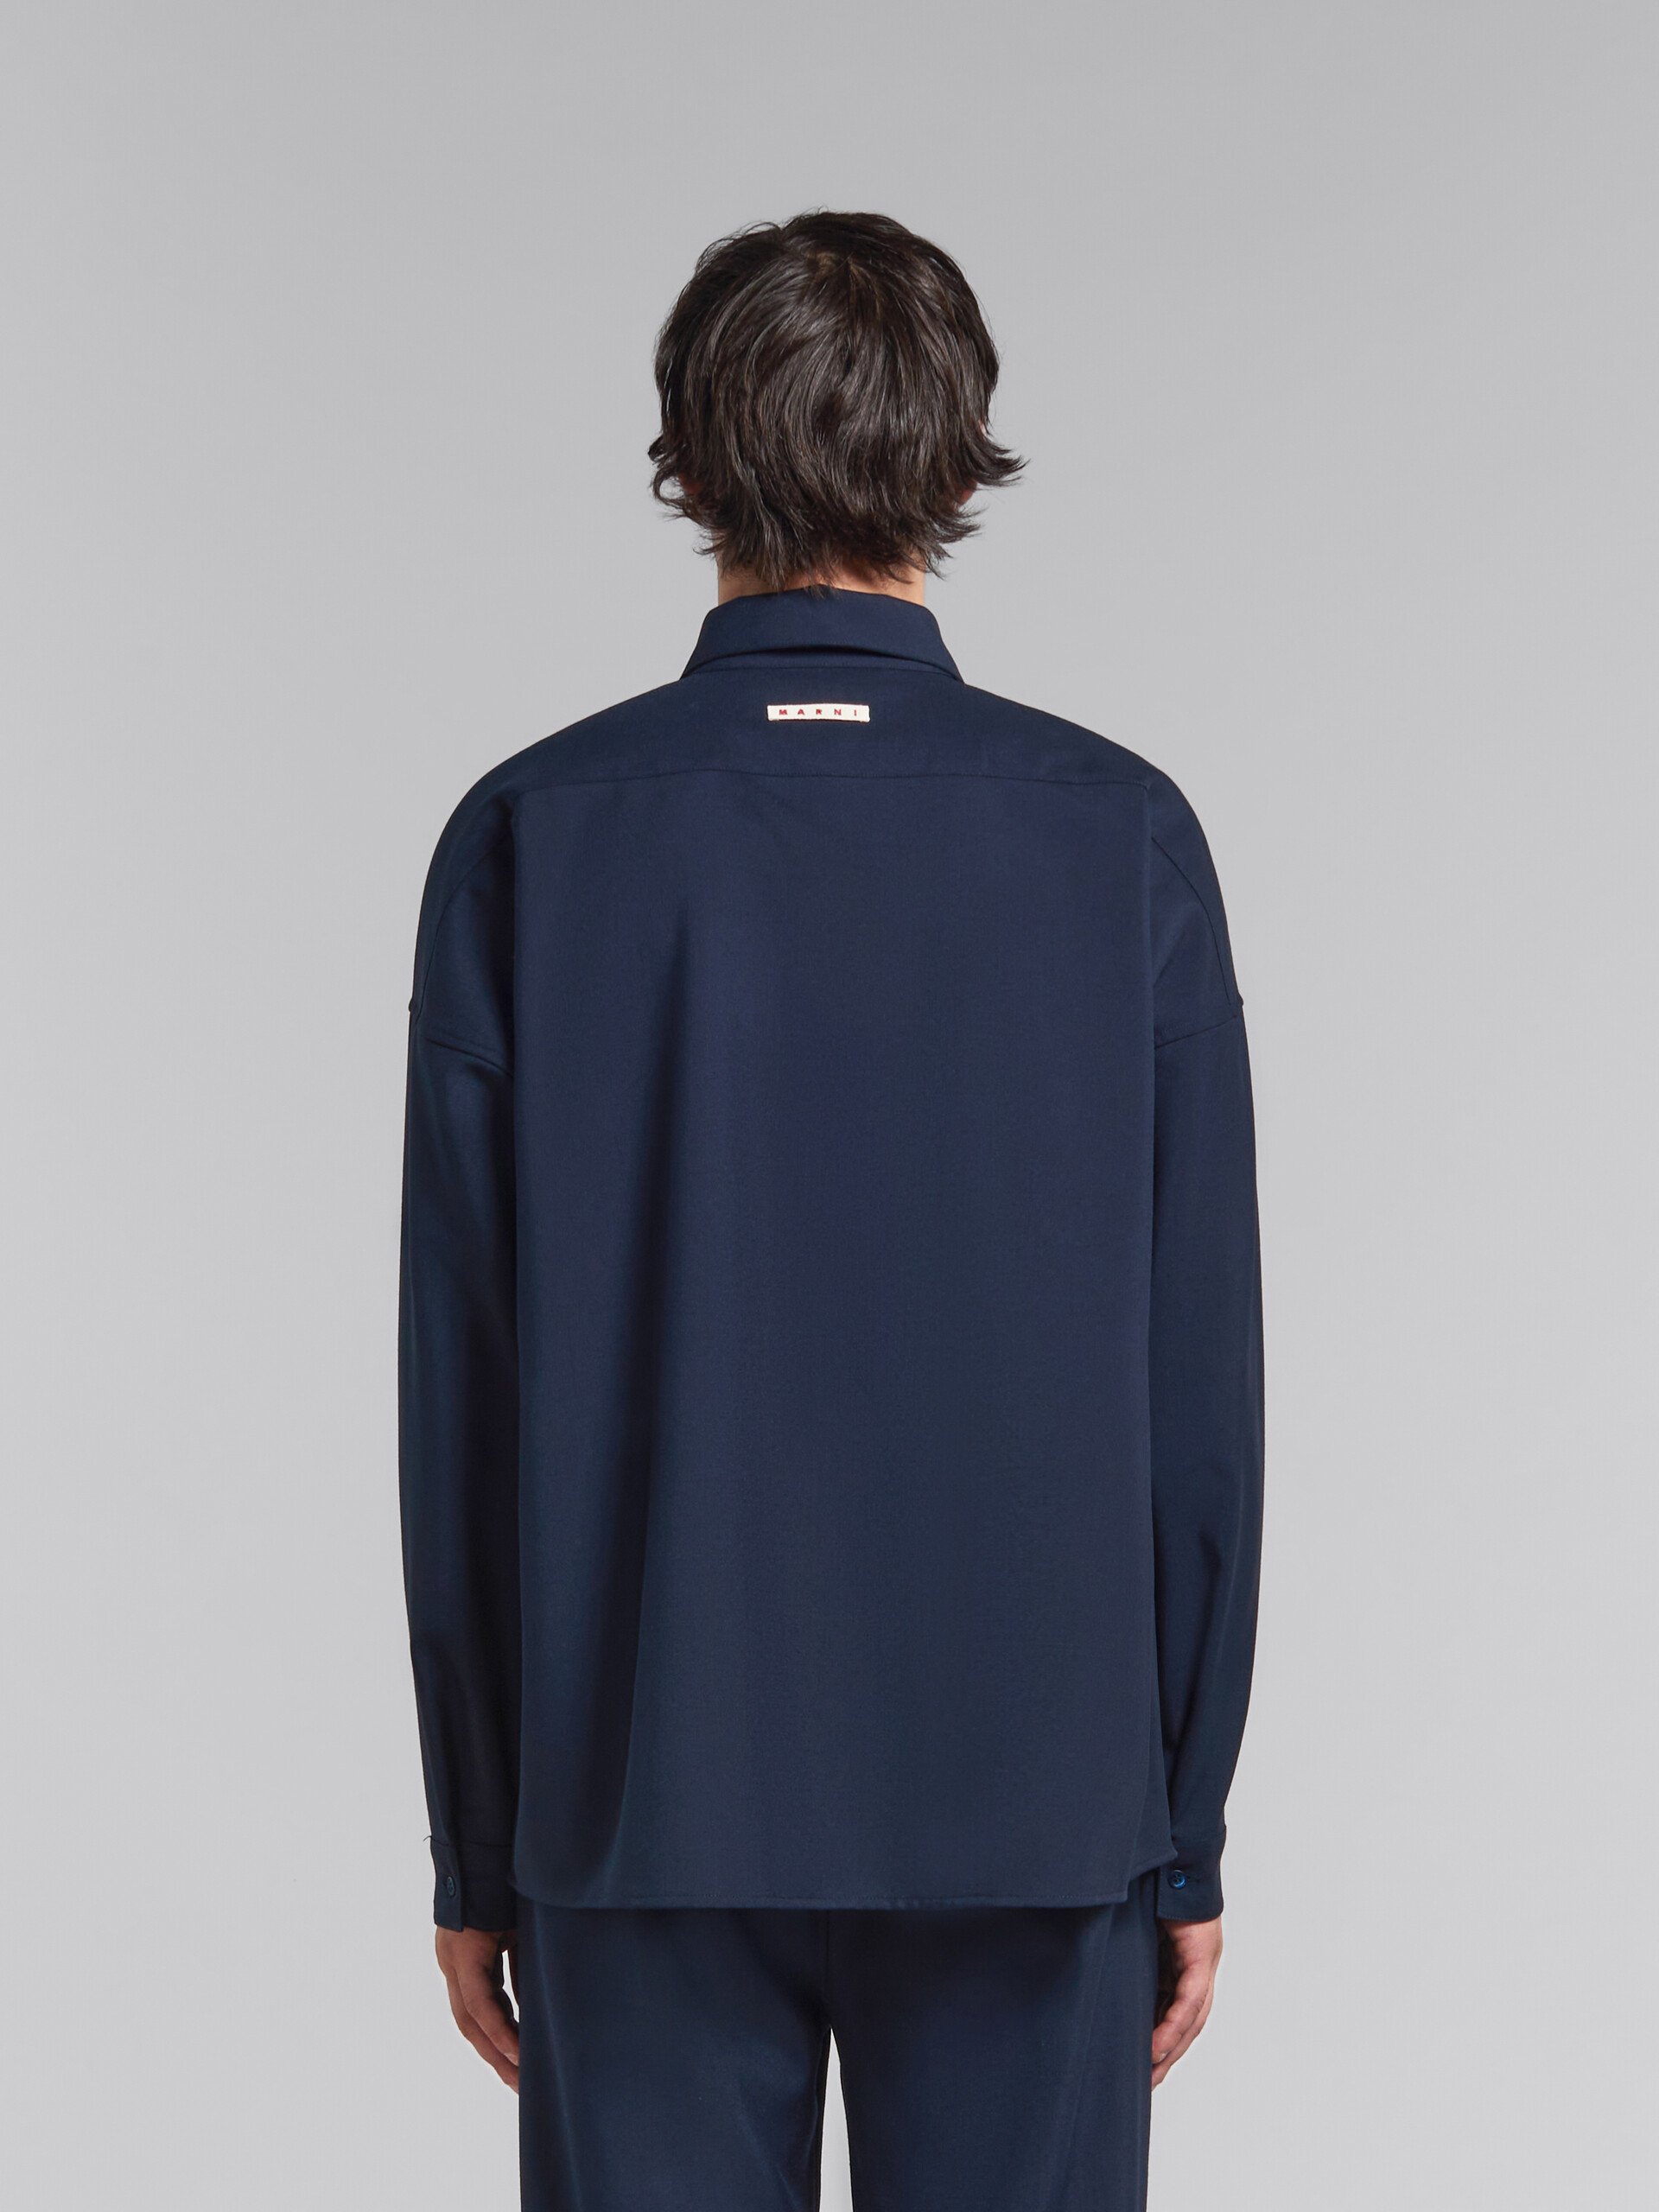 Chemise à manches longues en laine tropicale bleu profond - Chemises - Image 3